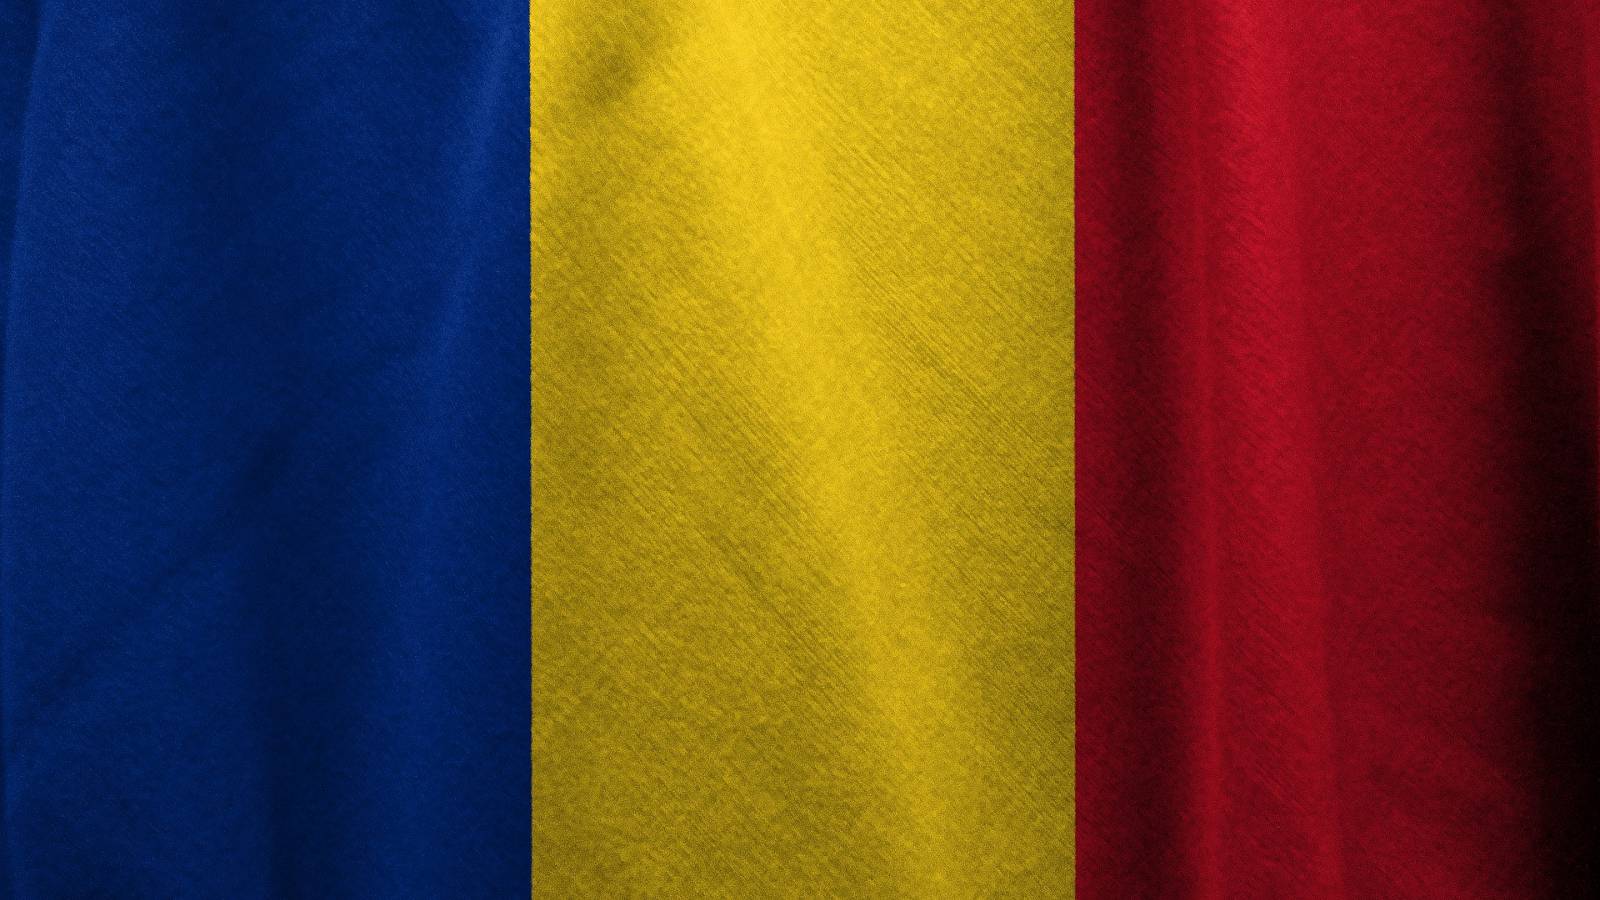 Quanto sono diminuiti i nuovi casi di COVID-19 in Romania negli ultimi 7 giorni